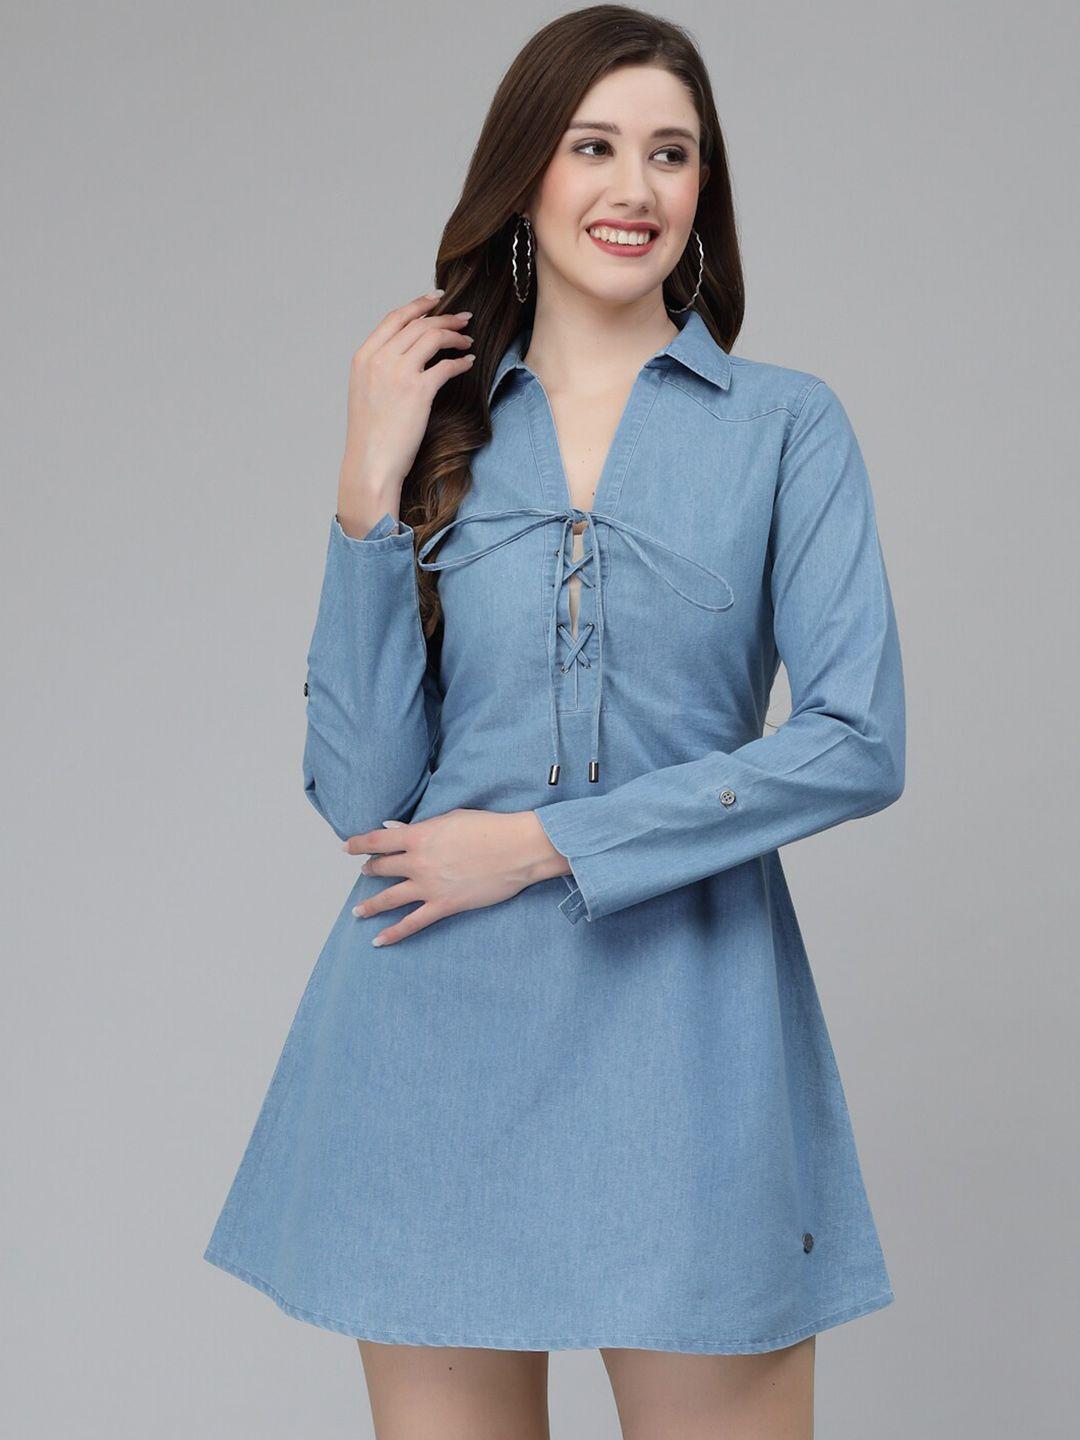 wool trees shirt collar a-line mini dress